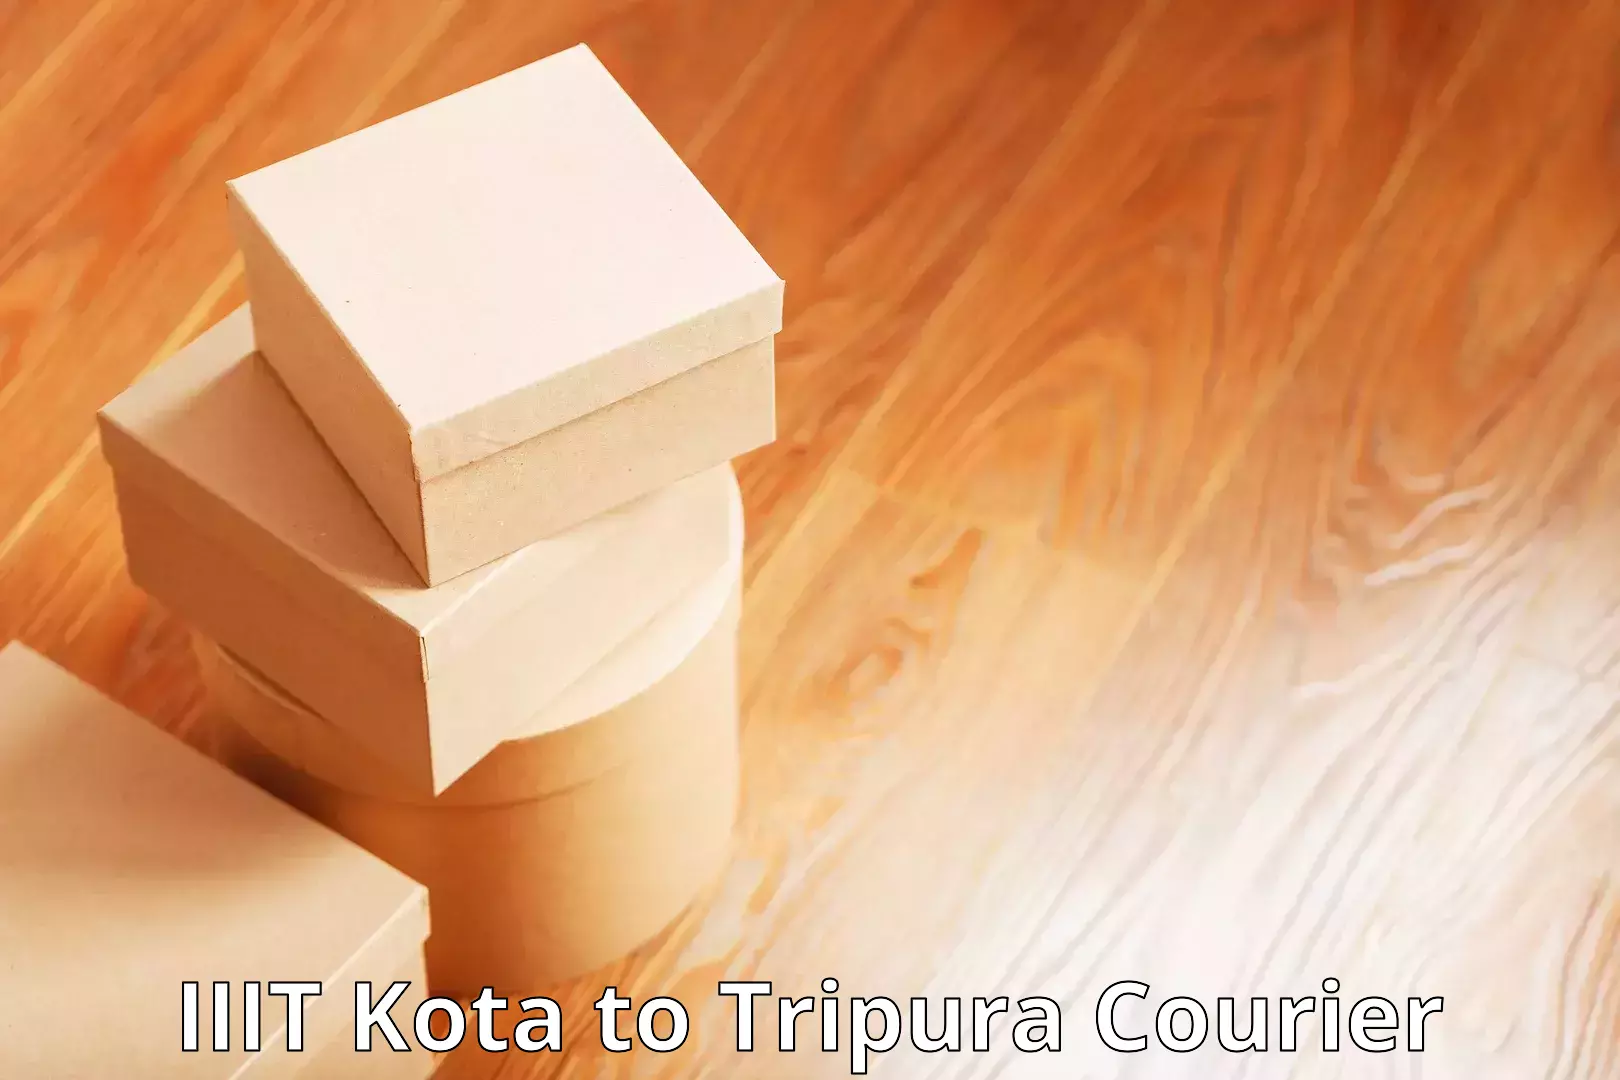 Delivery service partnership IIIT Kota to IIIT Agartala